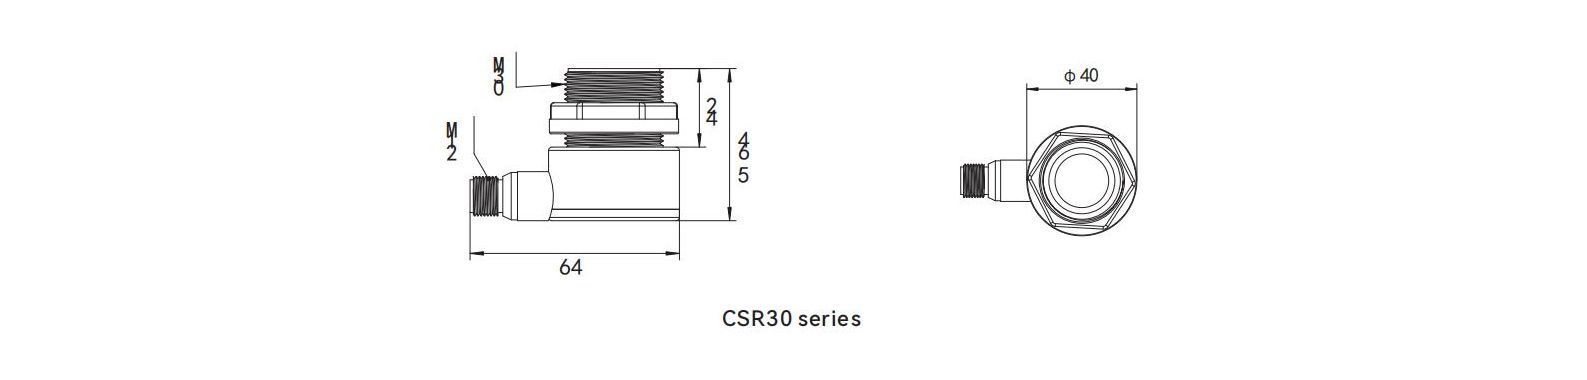 Ultr Proximity Sensor CSR30 Series Dimensions